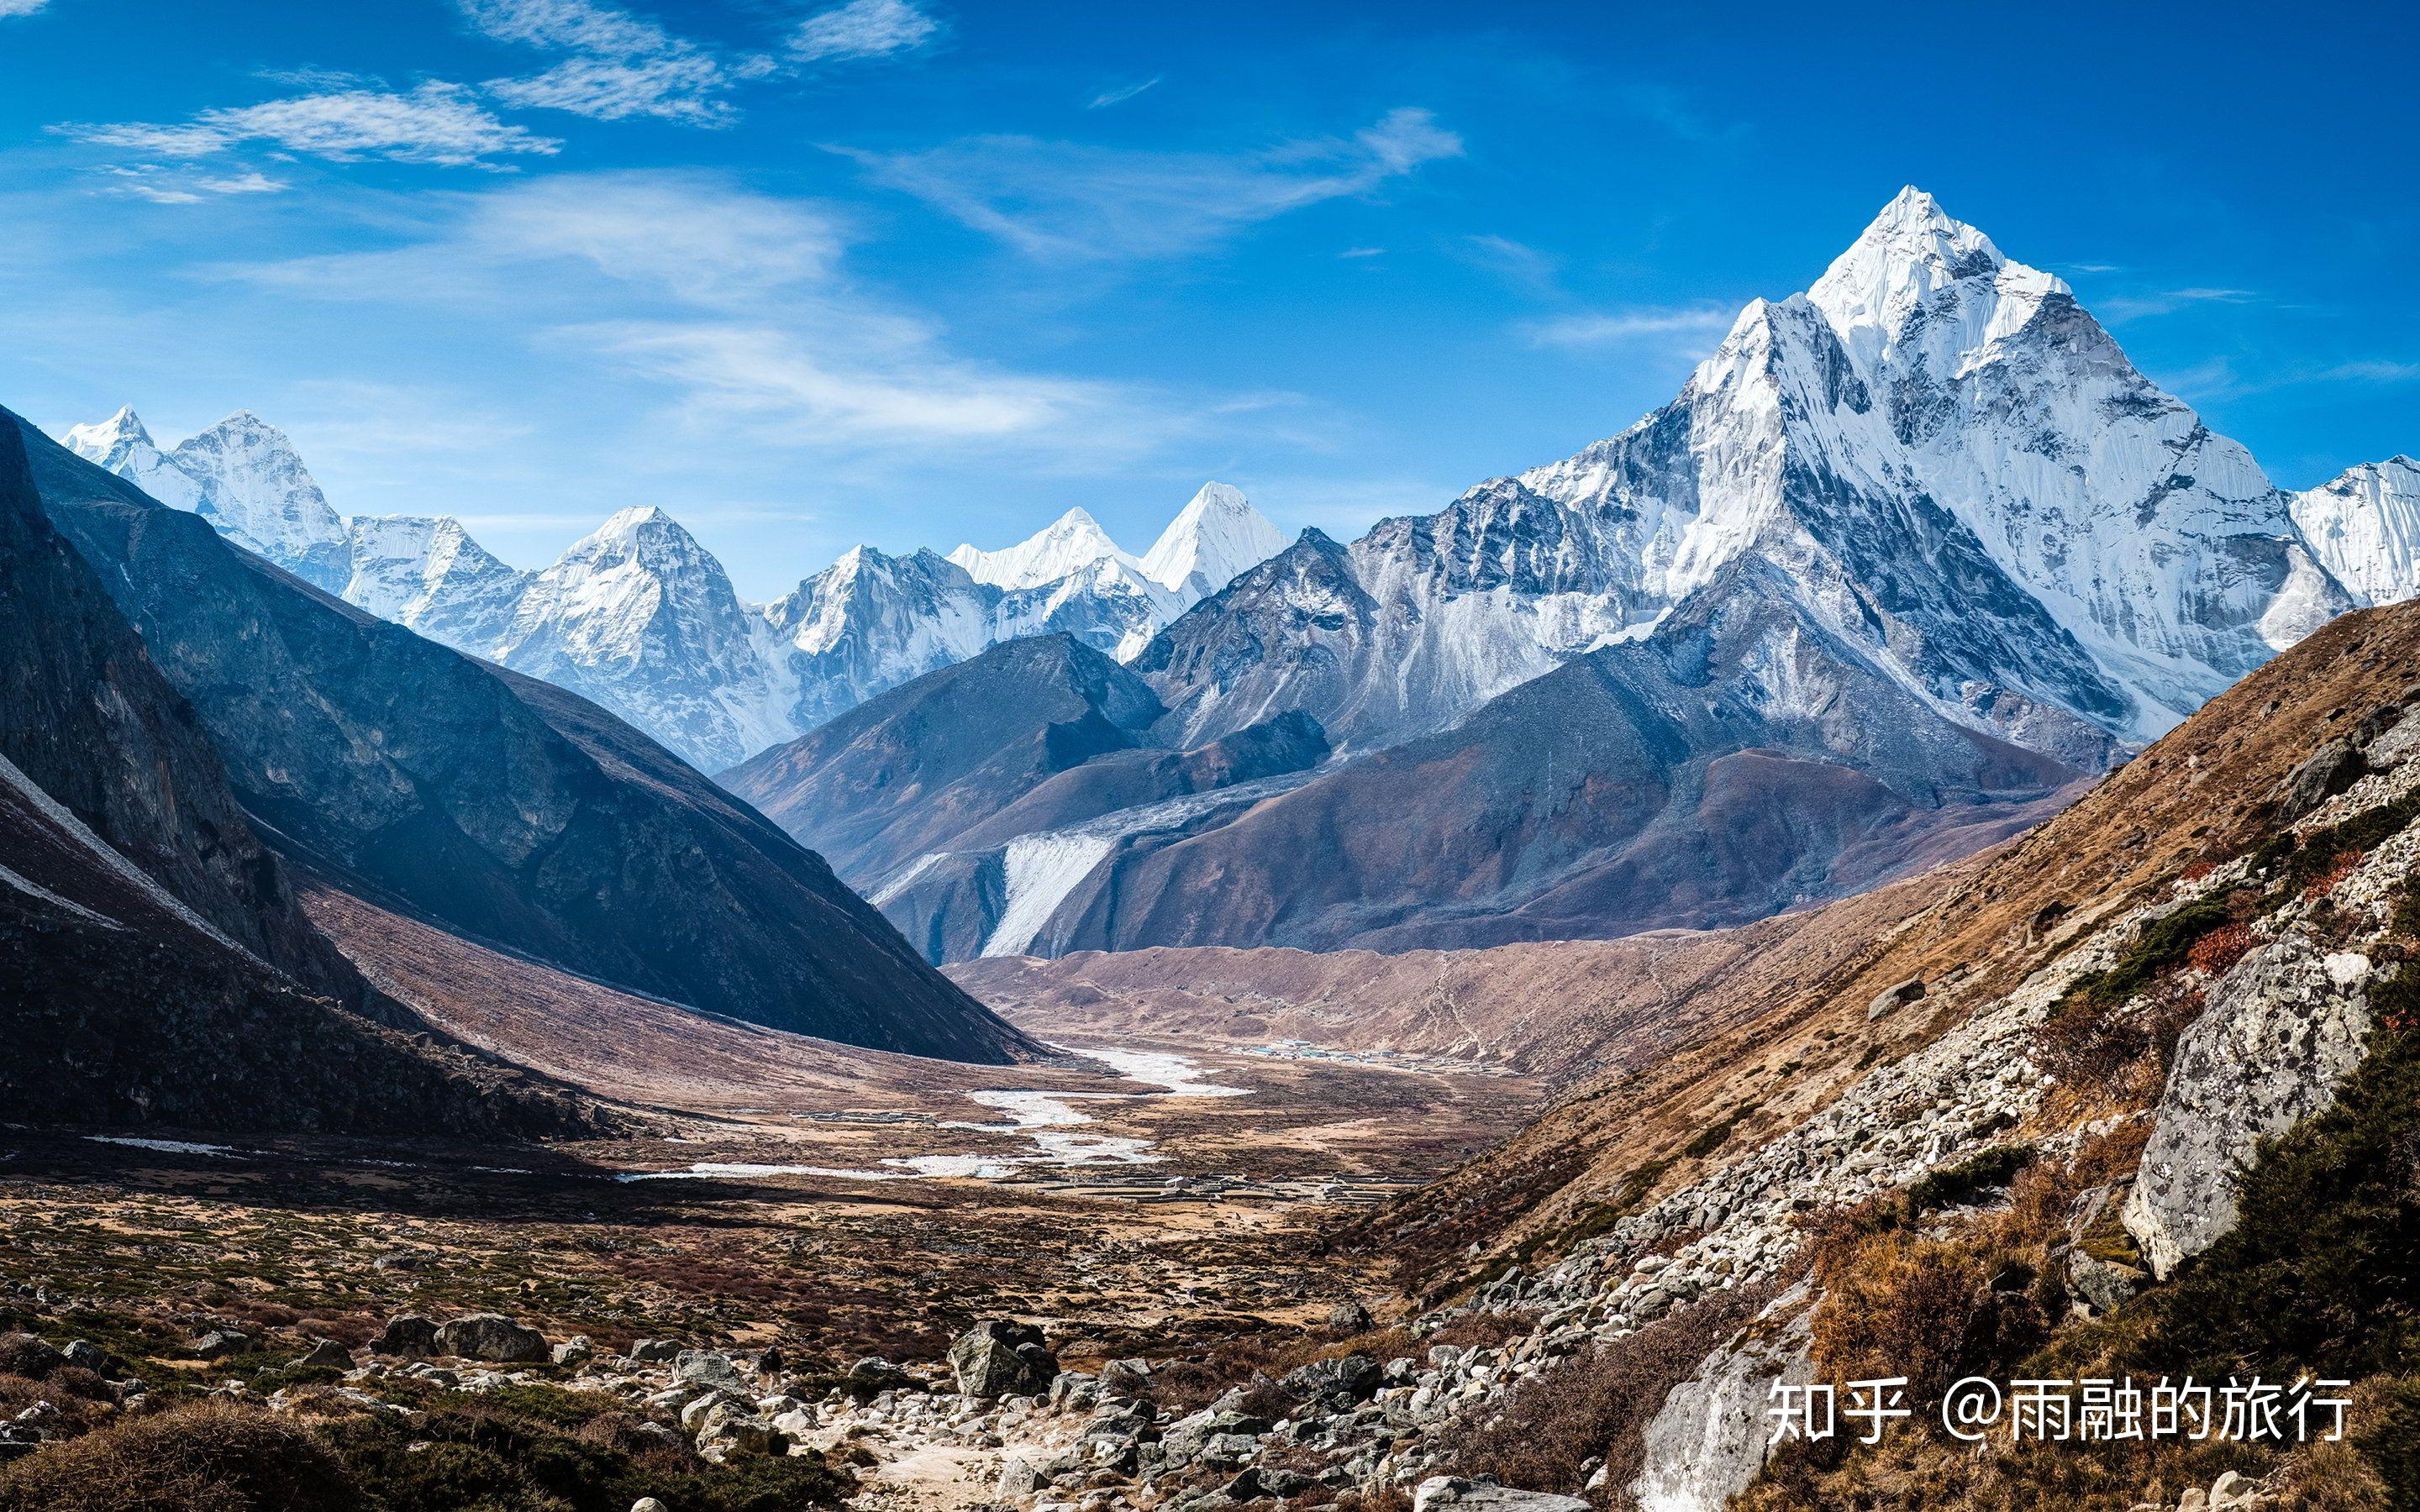 这座山位于中国与巴基斯坦的边界上,也是一座重要的国界山,其高度达到